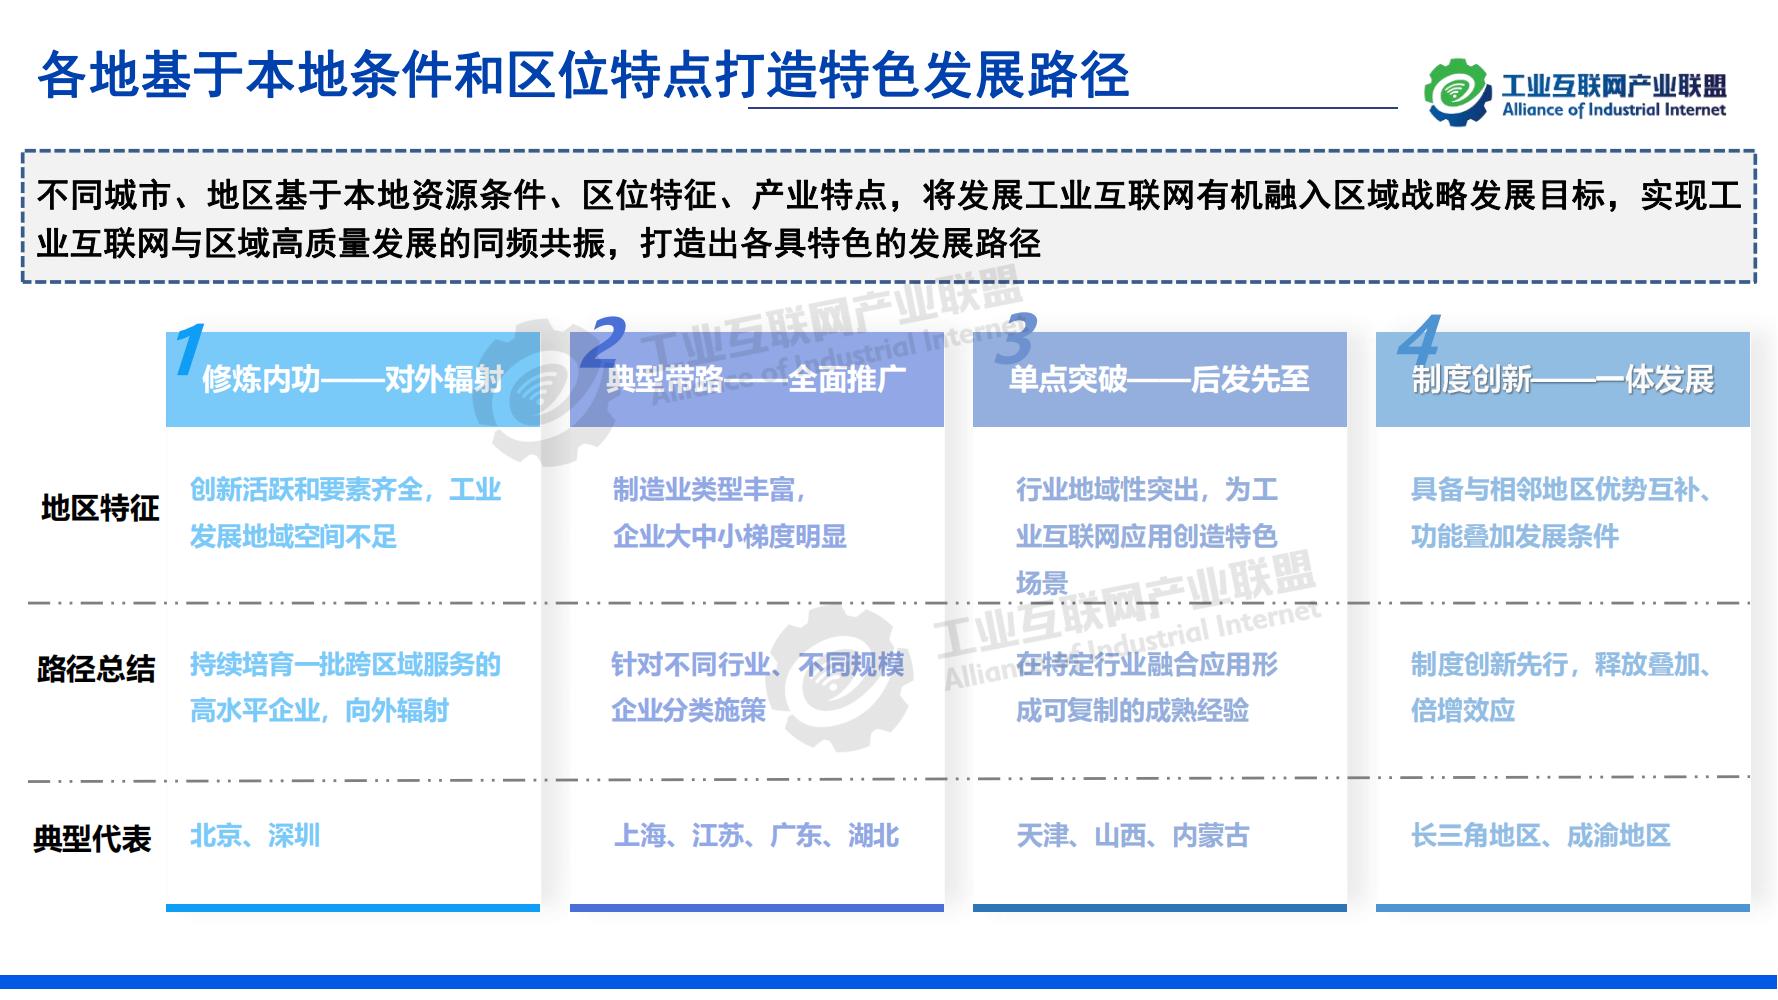 1-中国工业互联网发展成效评估报告-水印_24.jpg